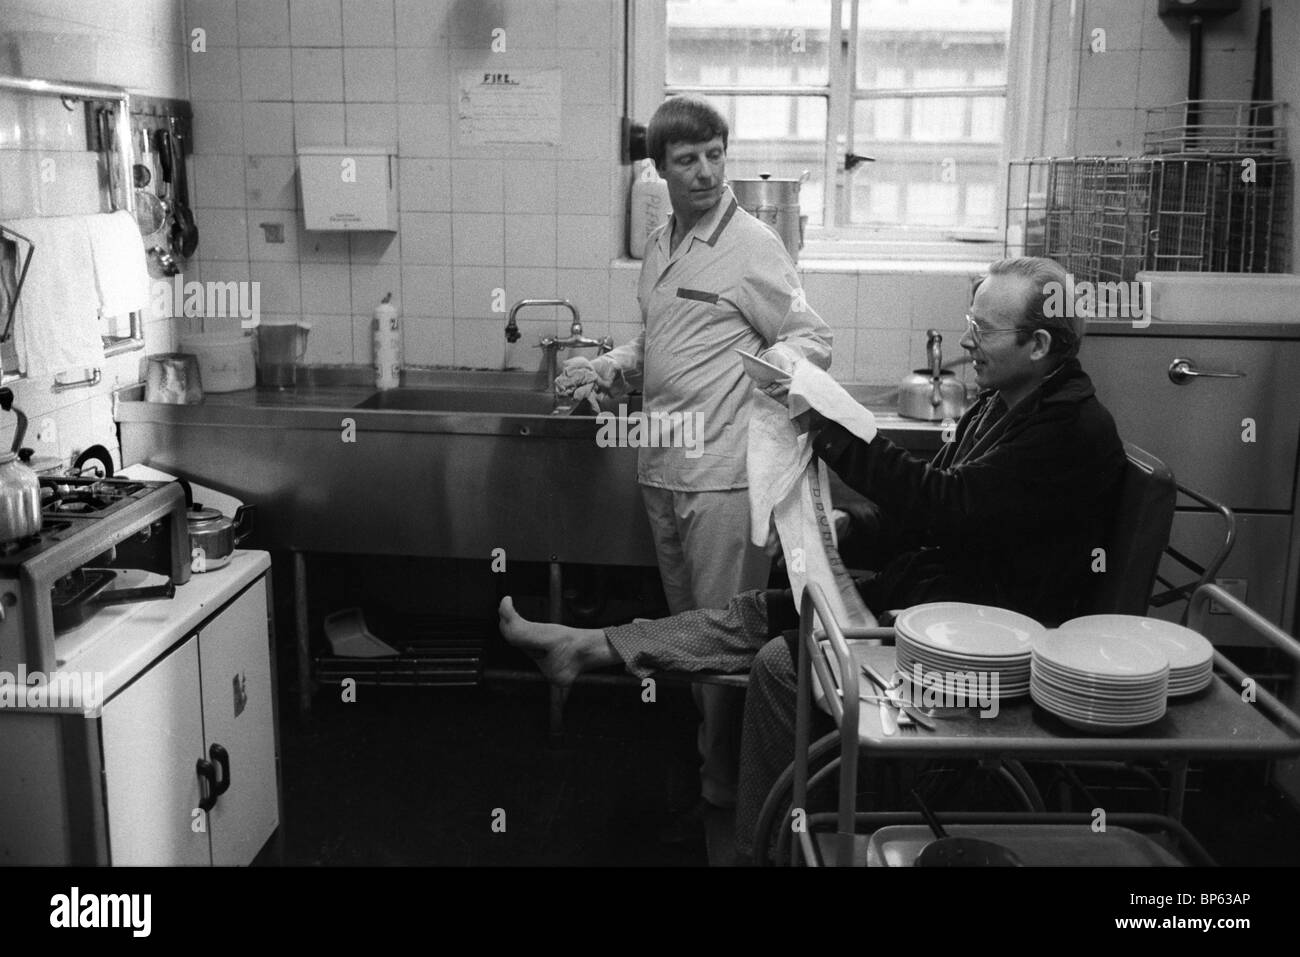 Winter der Unzufriedenheit London 1979. Westminster Krankenhaus-Patienten, die in der Lage sind, in ihrer Stationsküche zu arbeiten, während das Personal streikt. HOMER SYKES AUS DEN 1970ER JAHREN Stockfoto